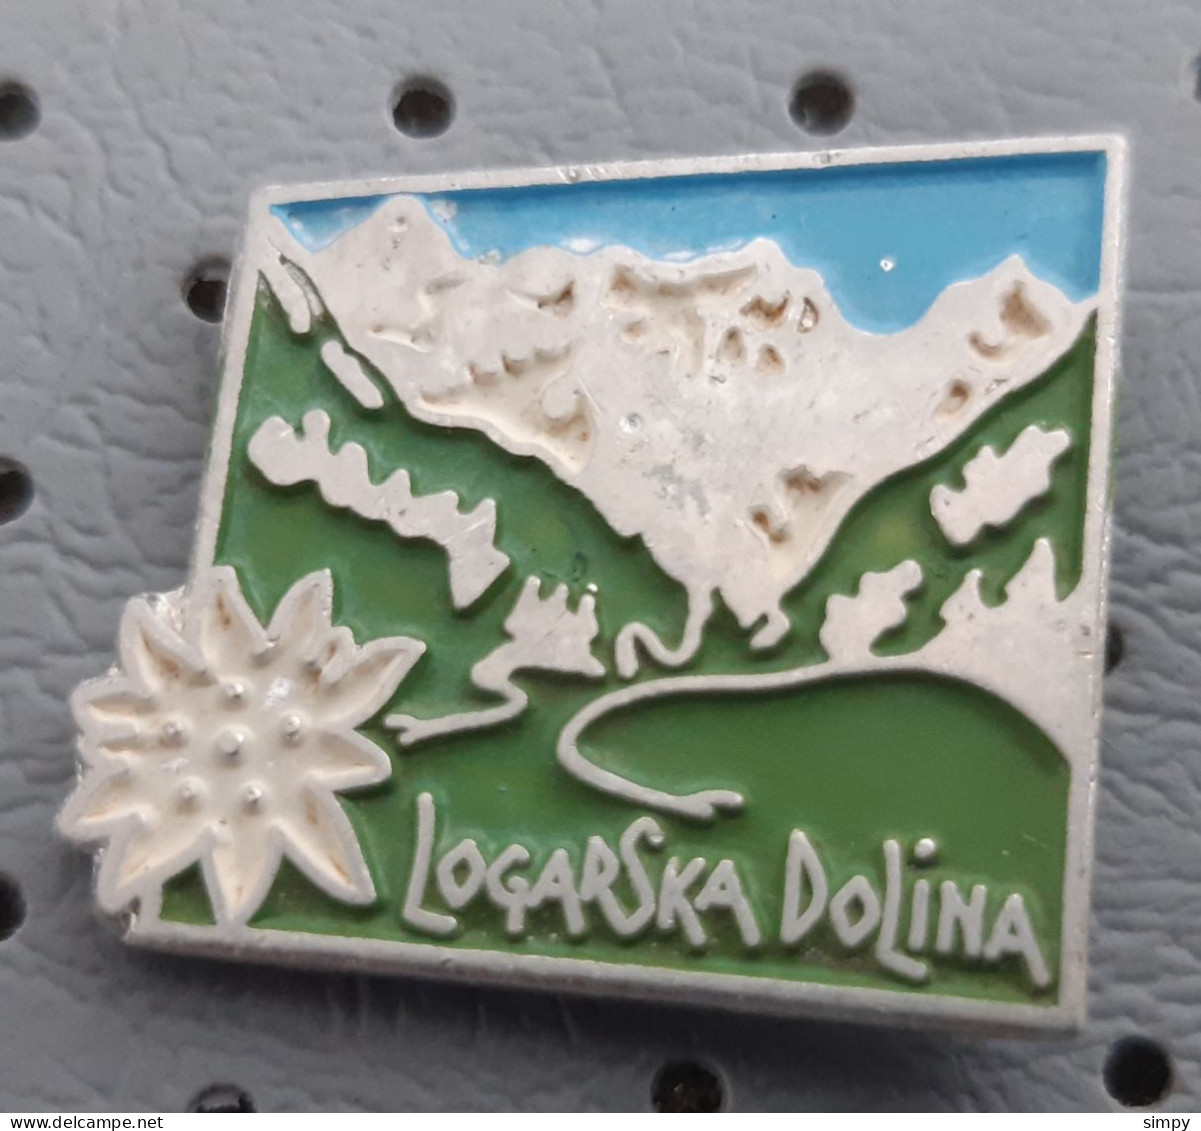 Logarska Dolina Logar Valley Alpinism, Mountaineering Slovenia Pin - Alpinism, Mountaineering